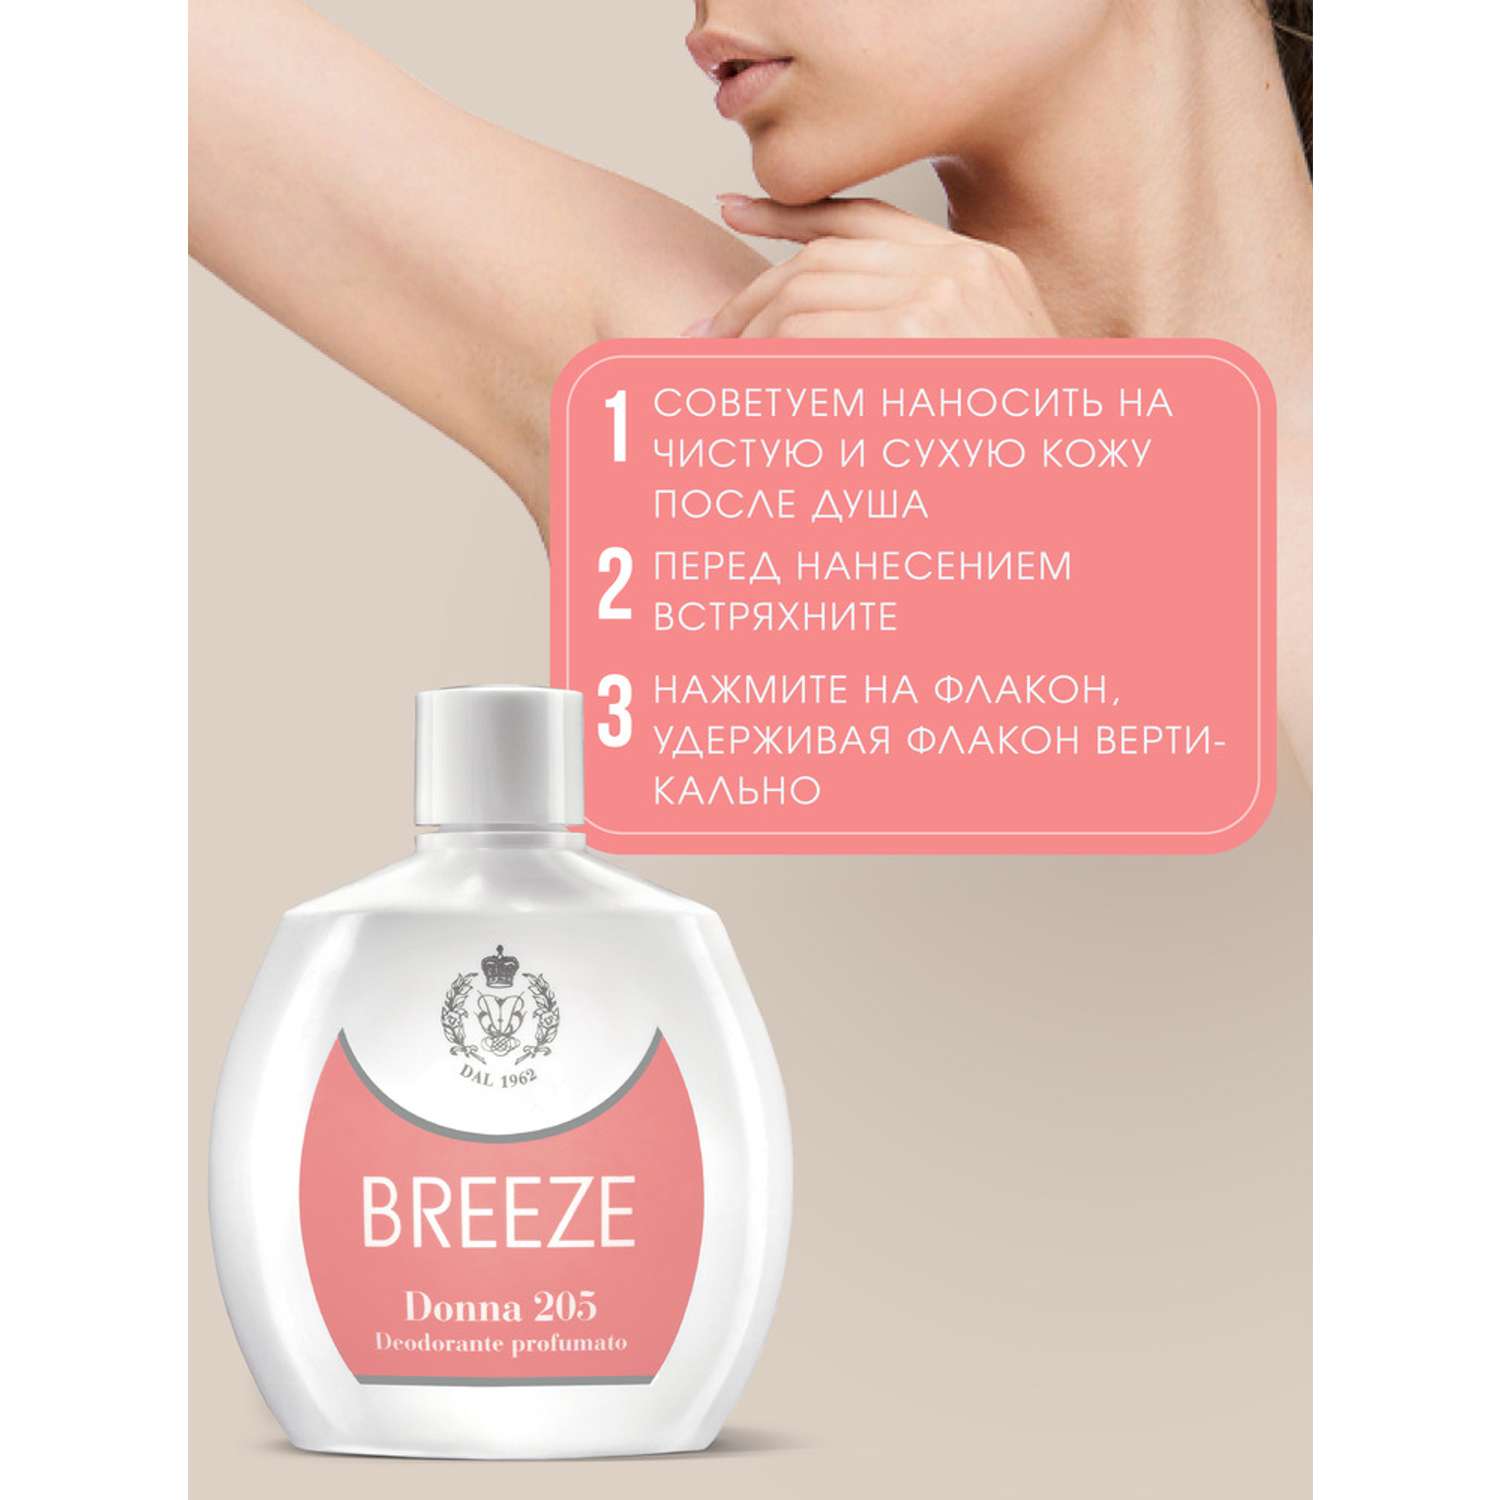 Дезодорант парфюмированный BREEZE donna 205 100мл - фото 2